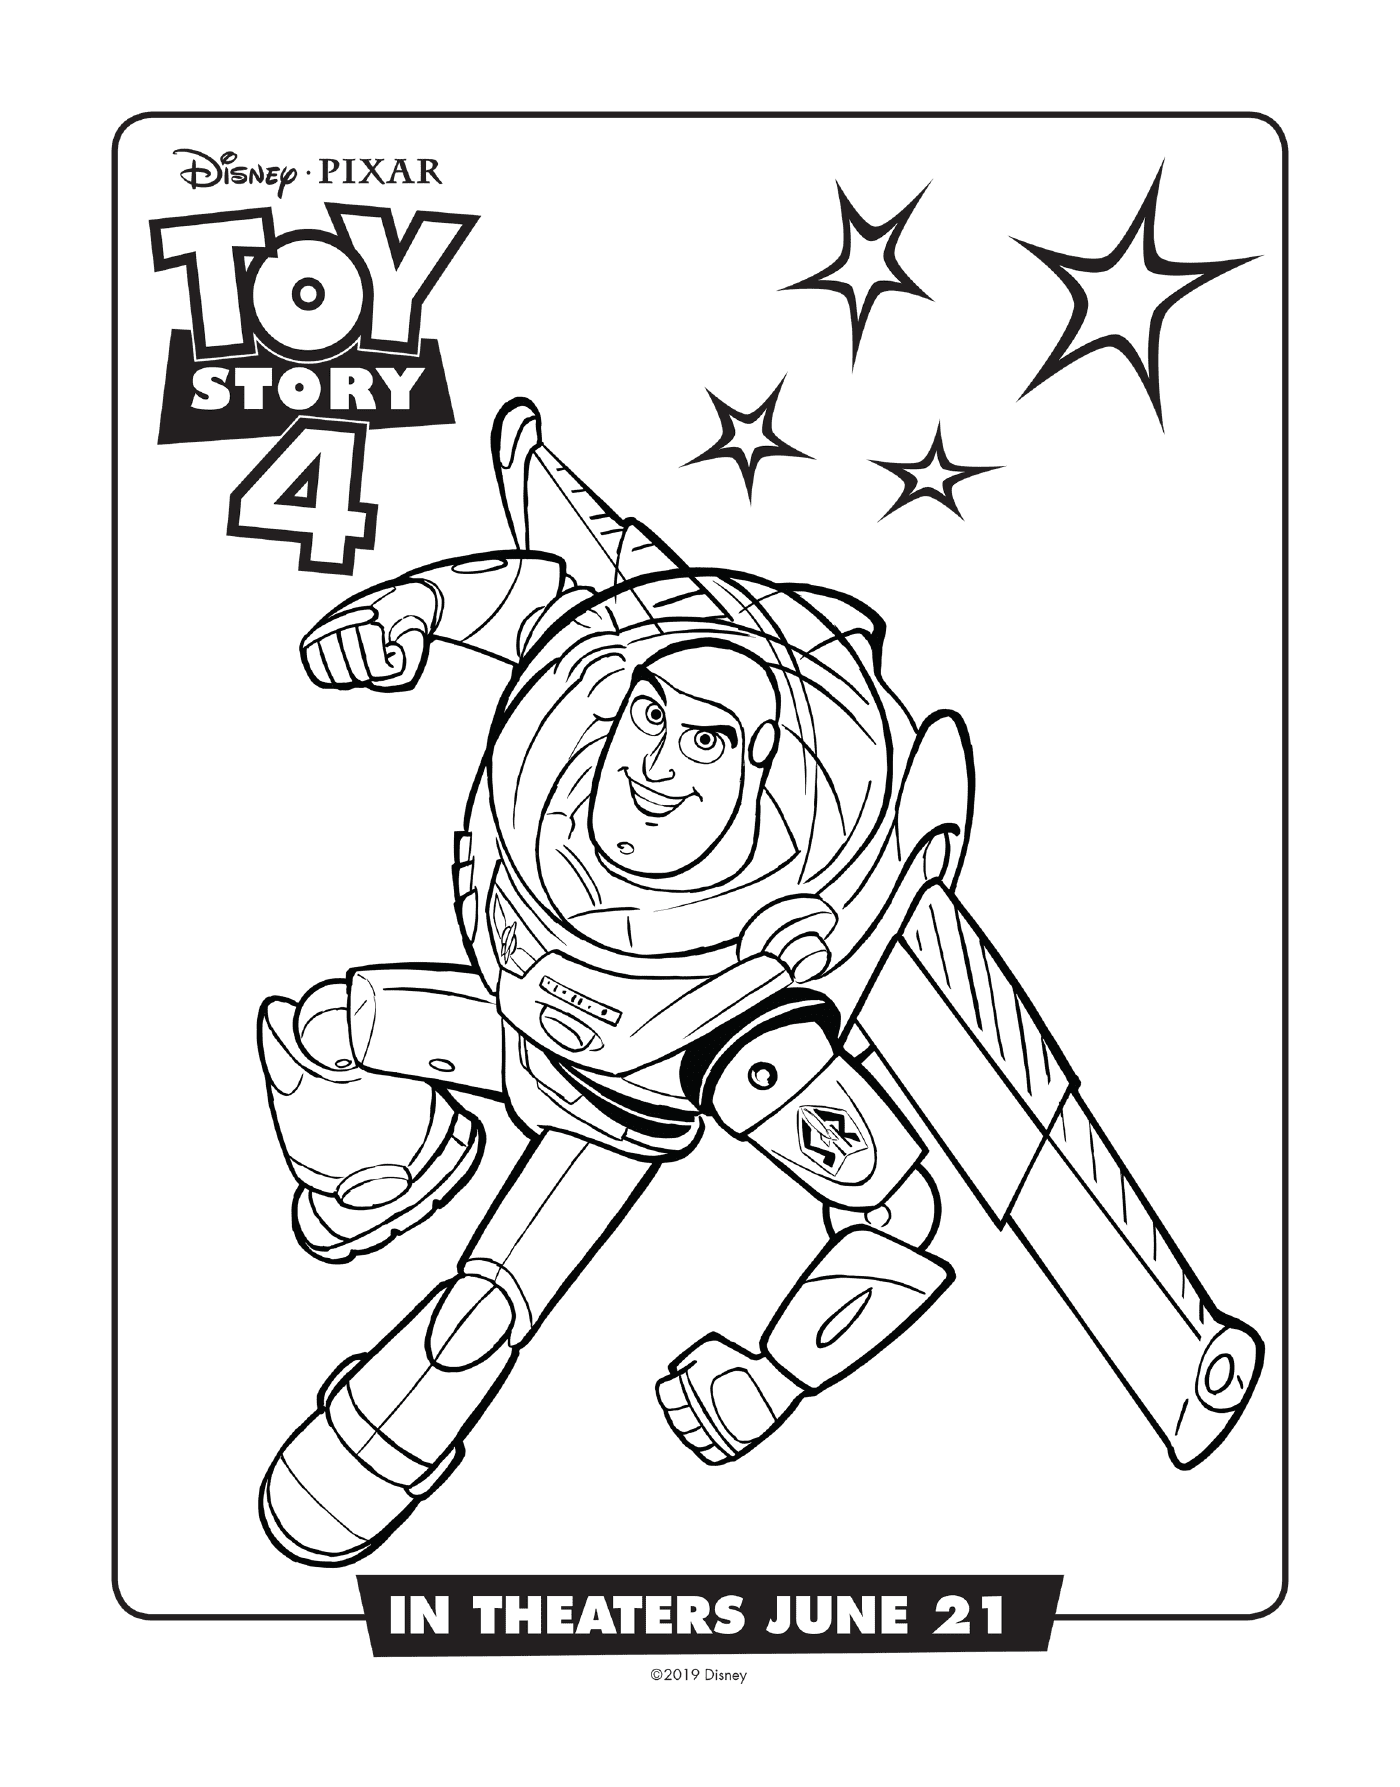   Buzz Lightyear de Toy Story, aventurier spatial 